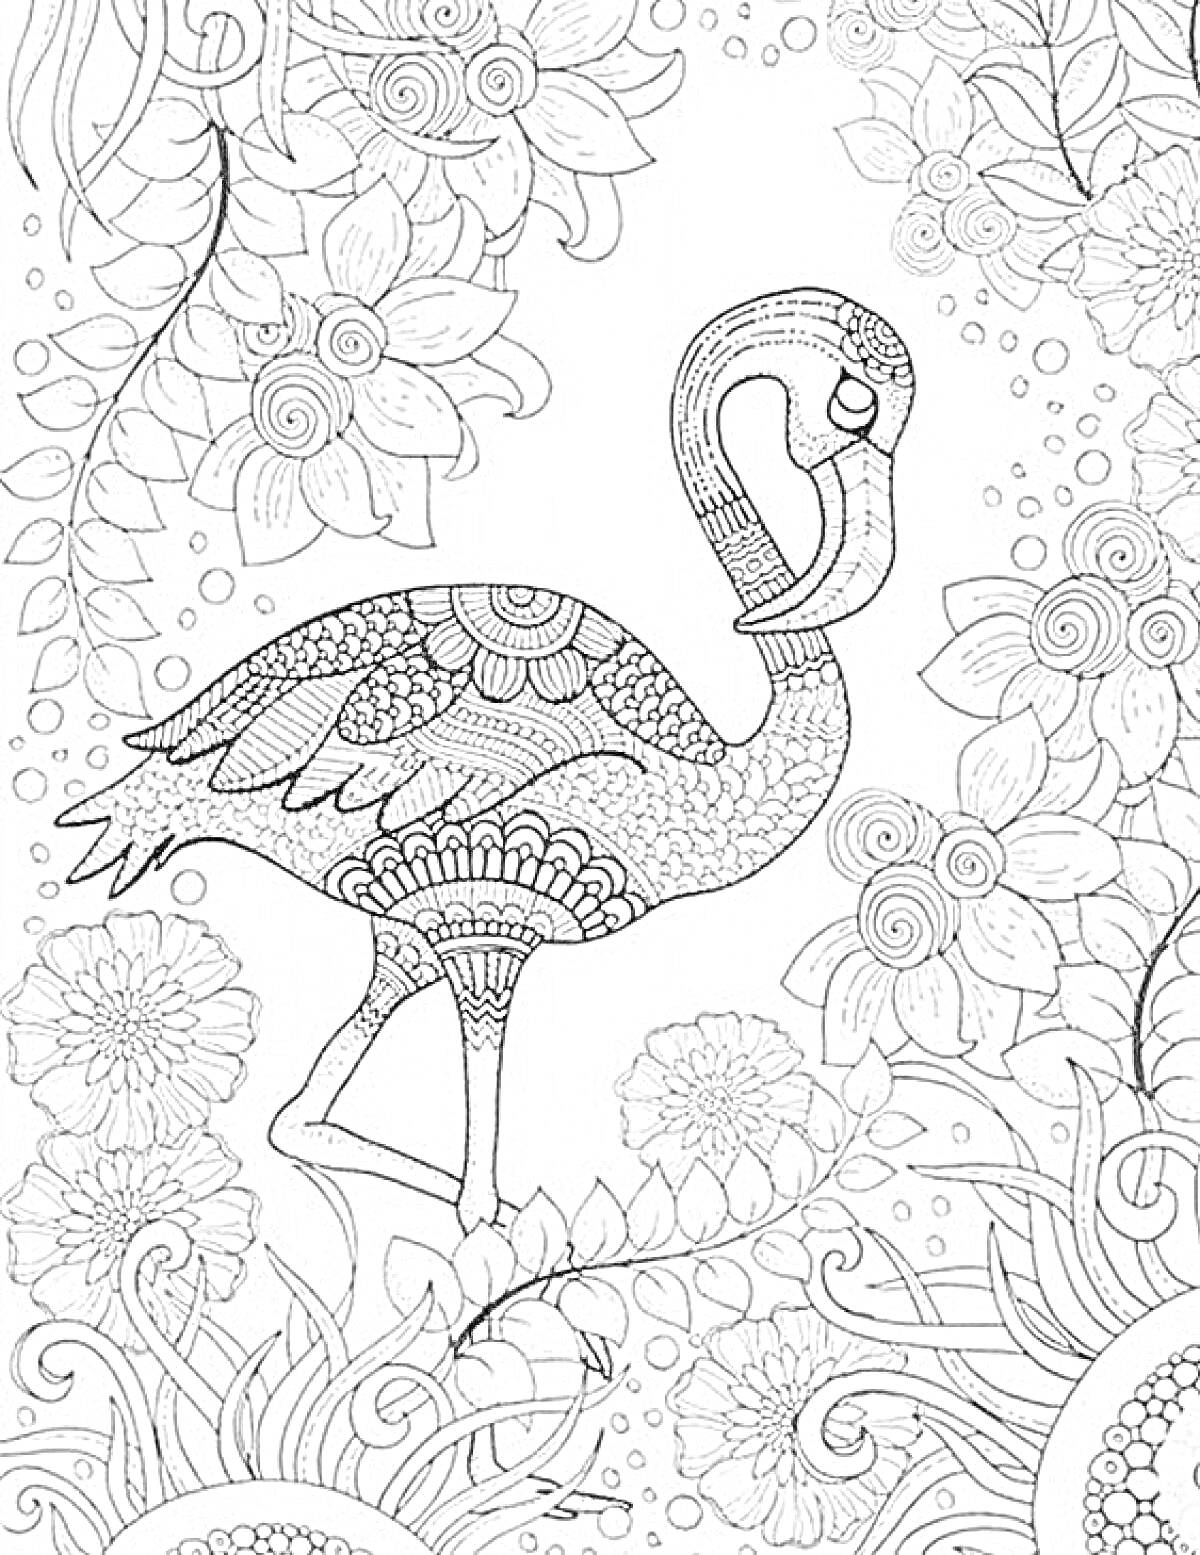 Антистресс раскраска с фламинго, цветами и декоративными элементами